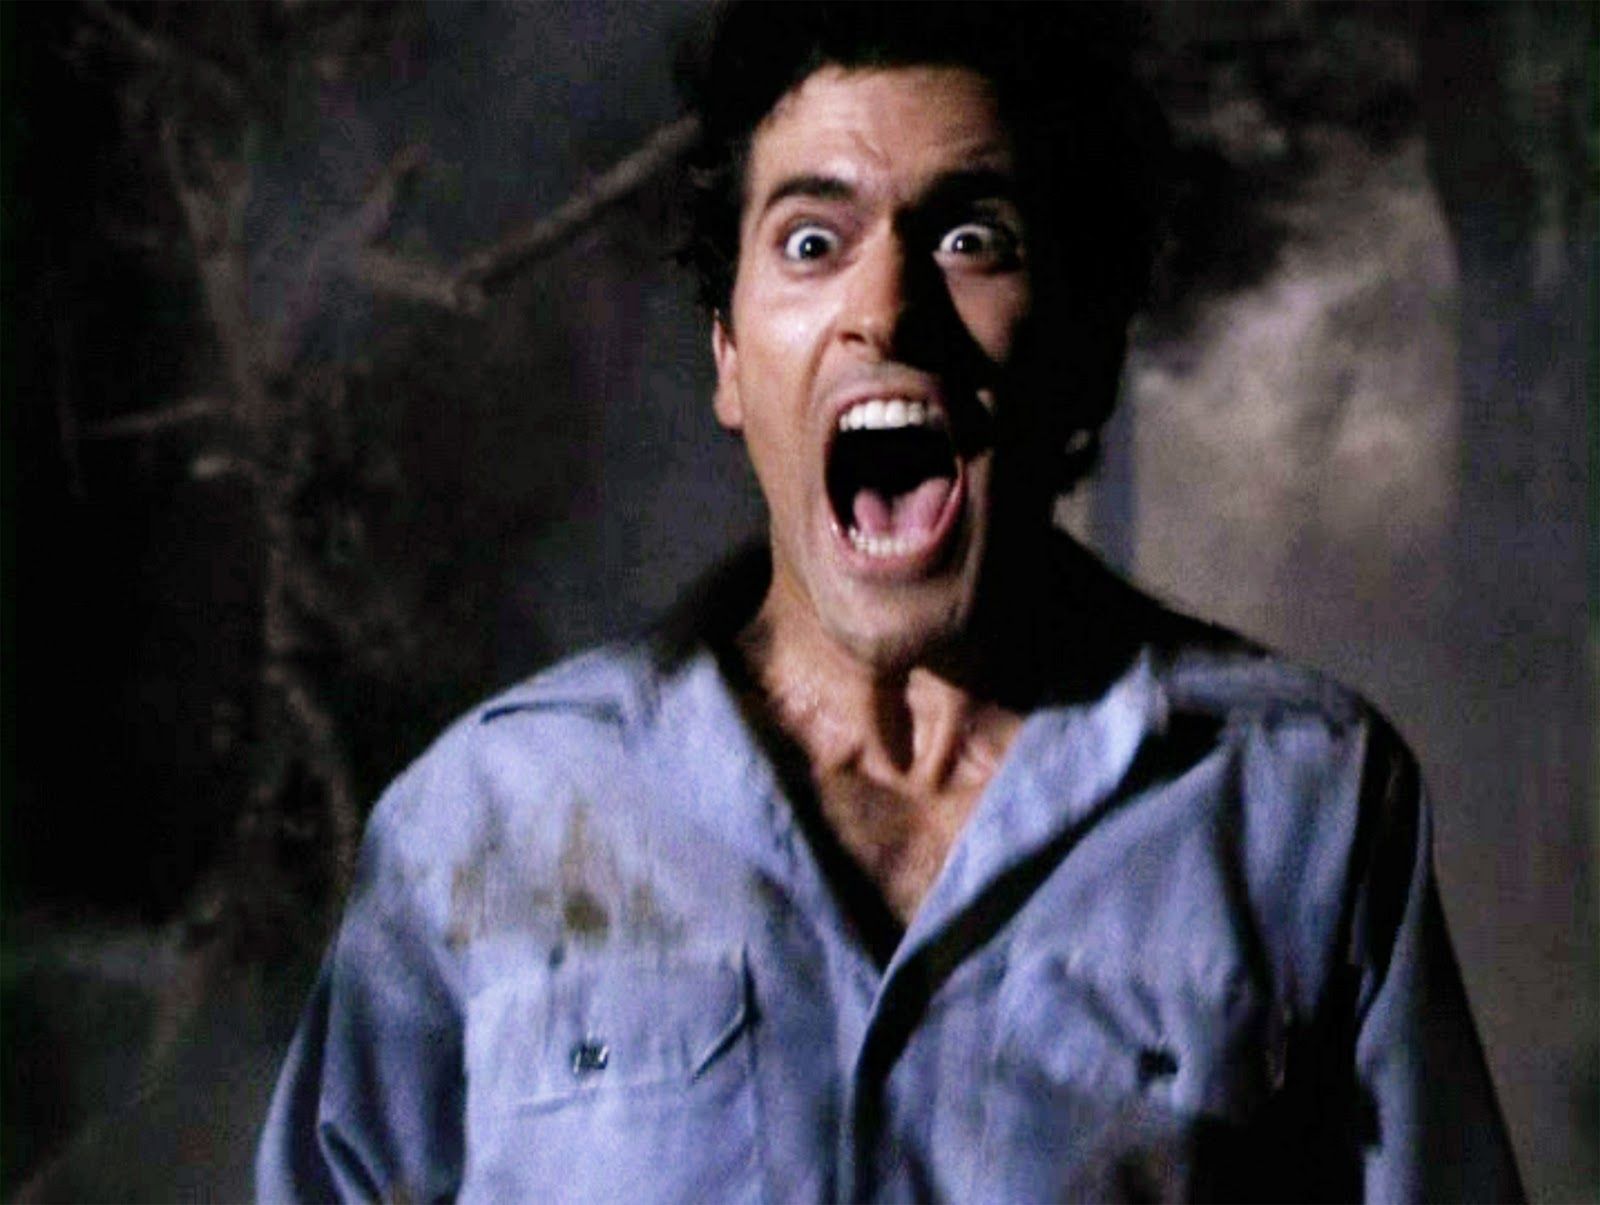 The Scream King: Bruce Campbell ne "La Casa" ("The Evil Dead") di Sam Raimi, 1981